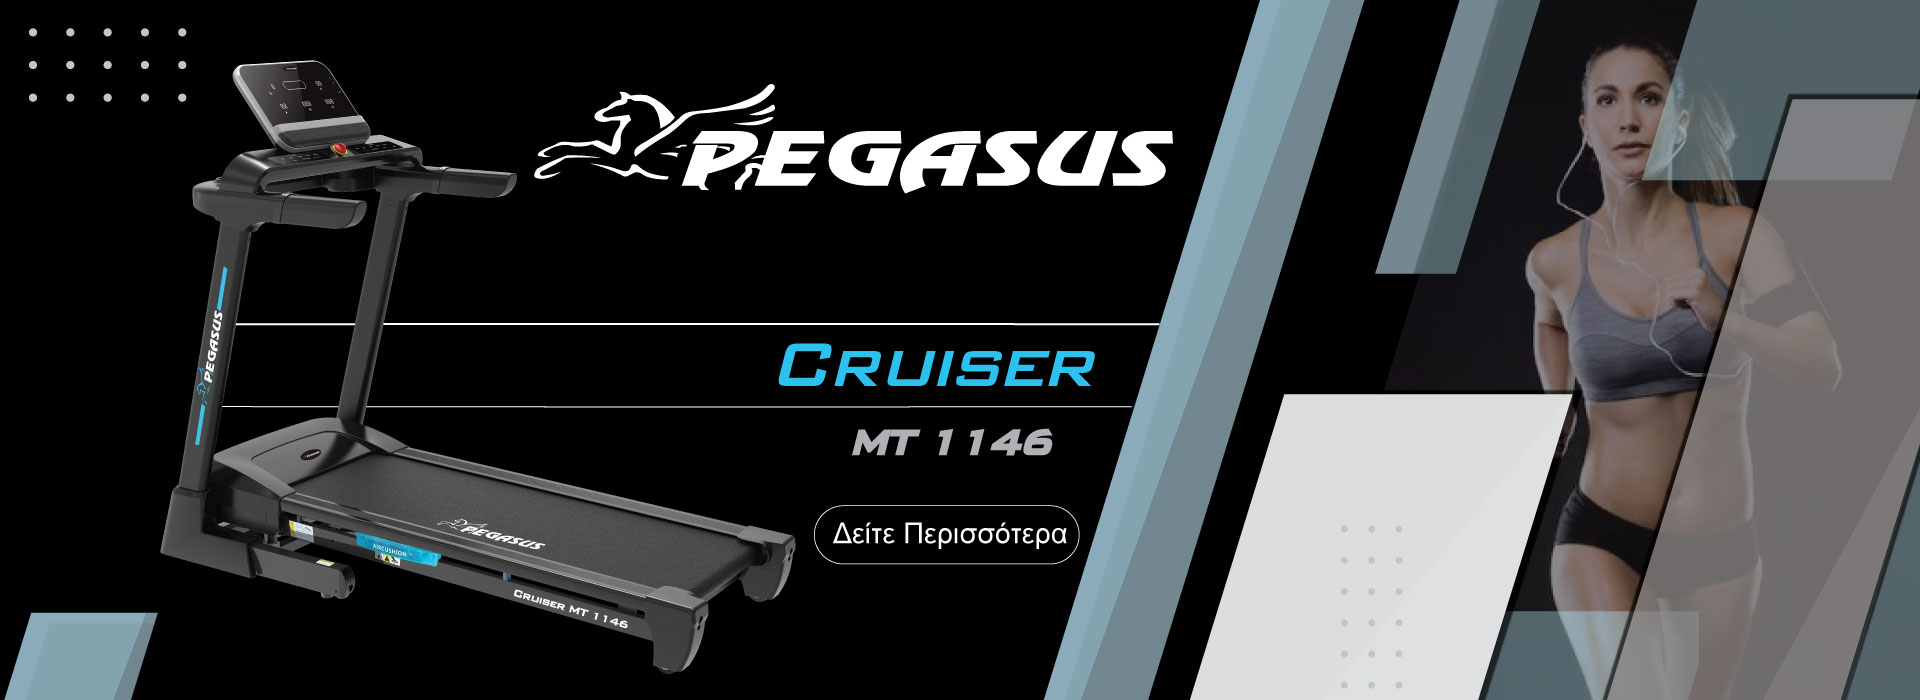 Pegasus® Cruiser